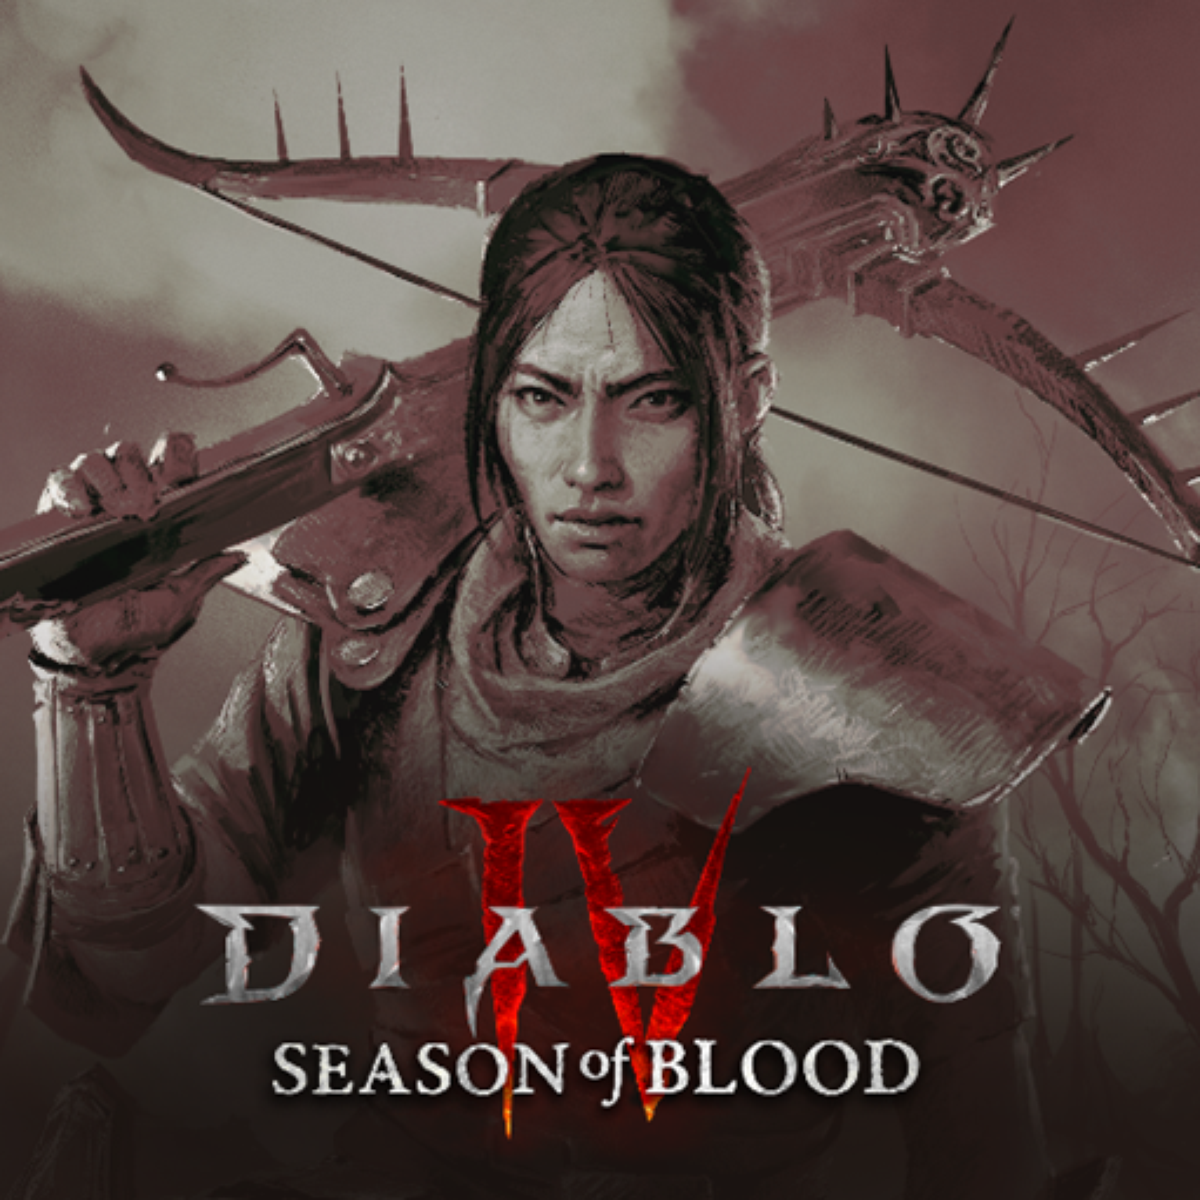 Diablo IV promete ser o jogo que todo fã da série esperava - Portal  Sorocaba.Com - O Portal da cidade de Sorocaba na Internet - Agenda  Cultural, Notícias, Cinemas, Guia Comercial